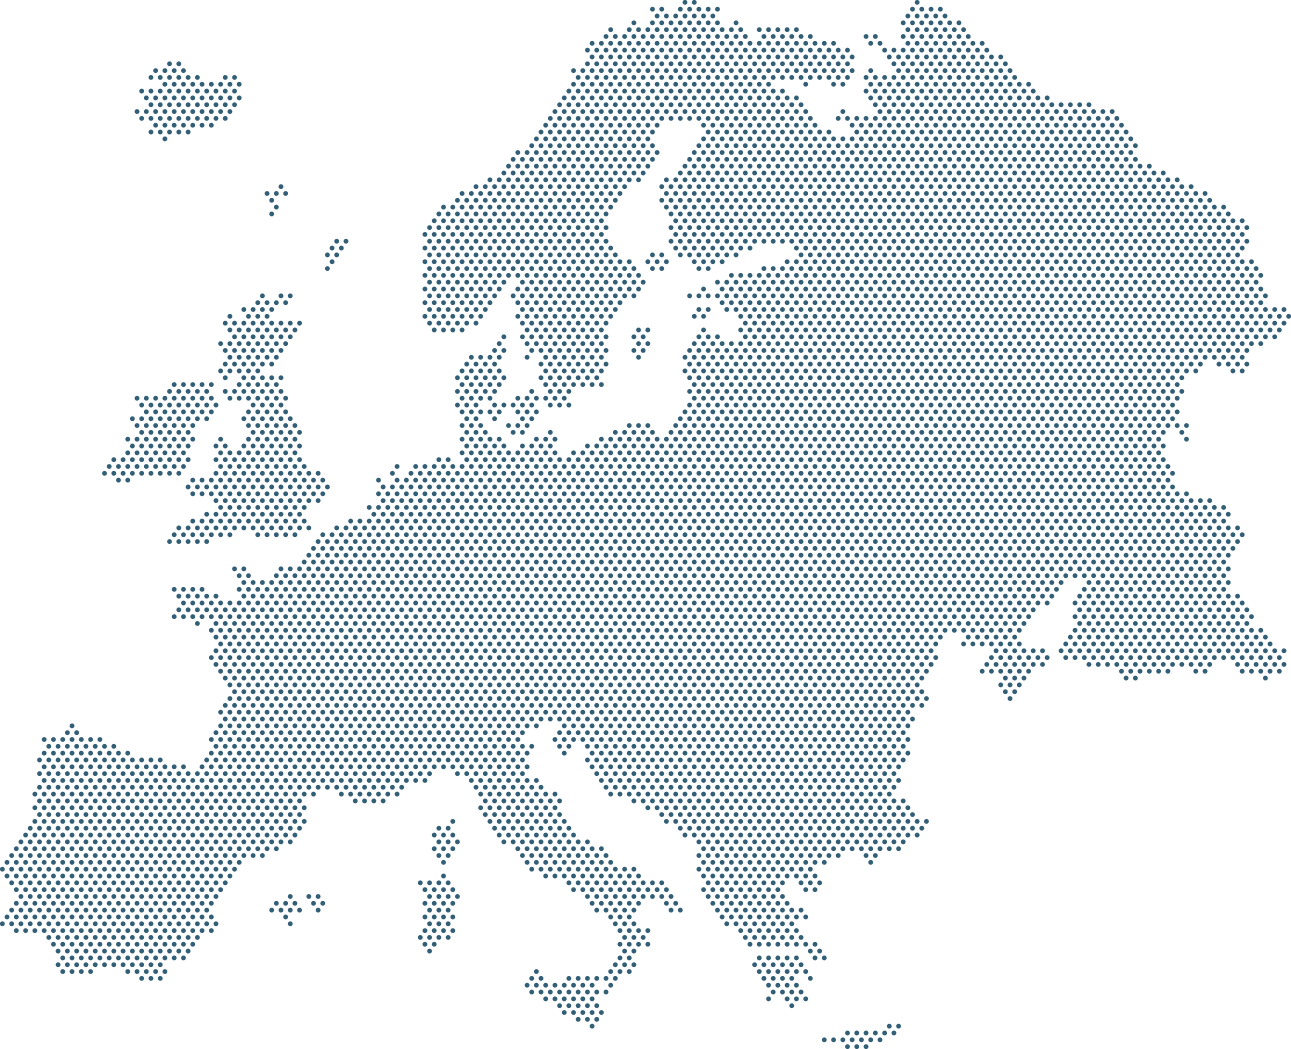 Zdjęcie mapy europy